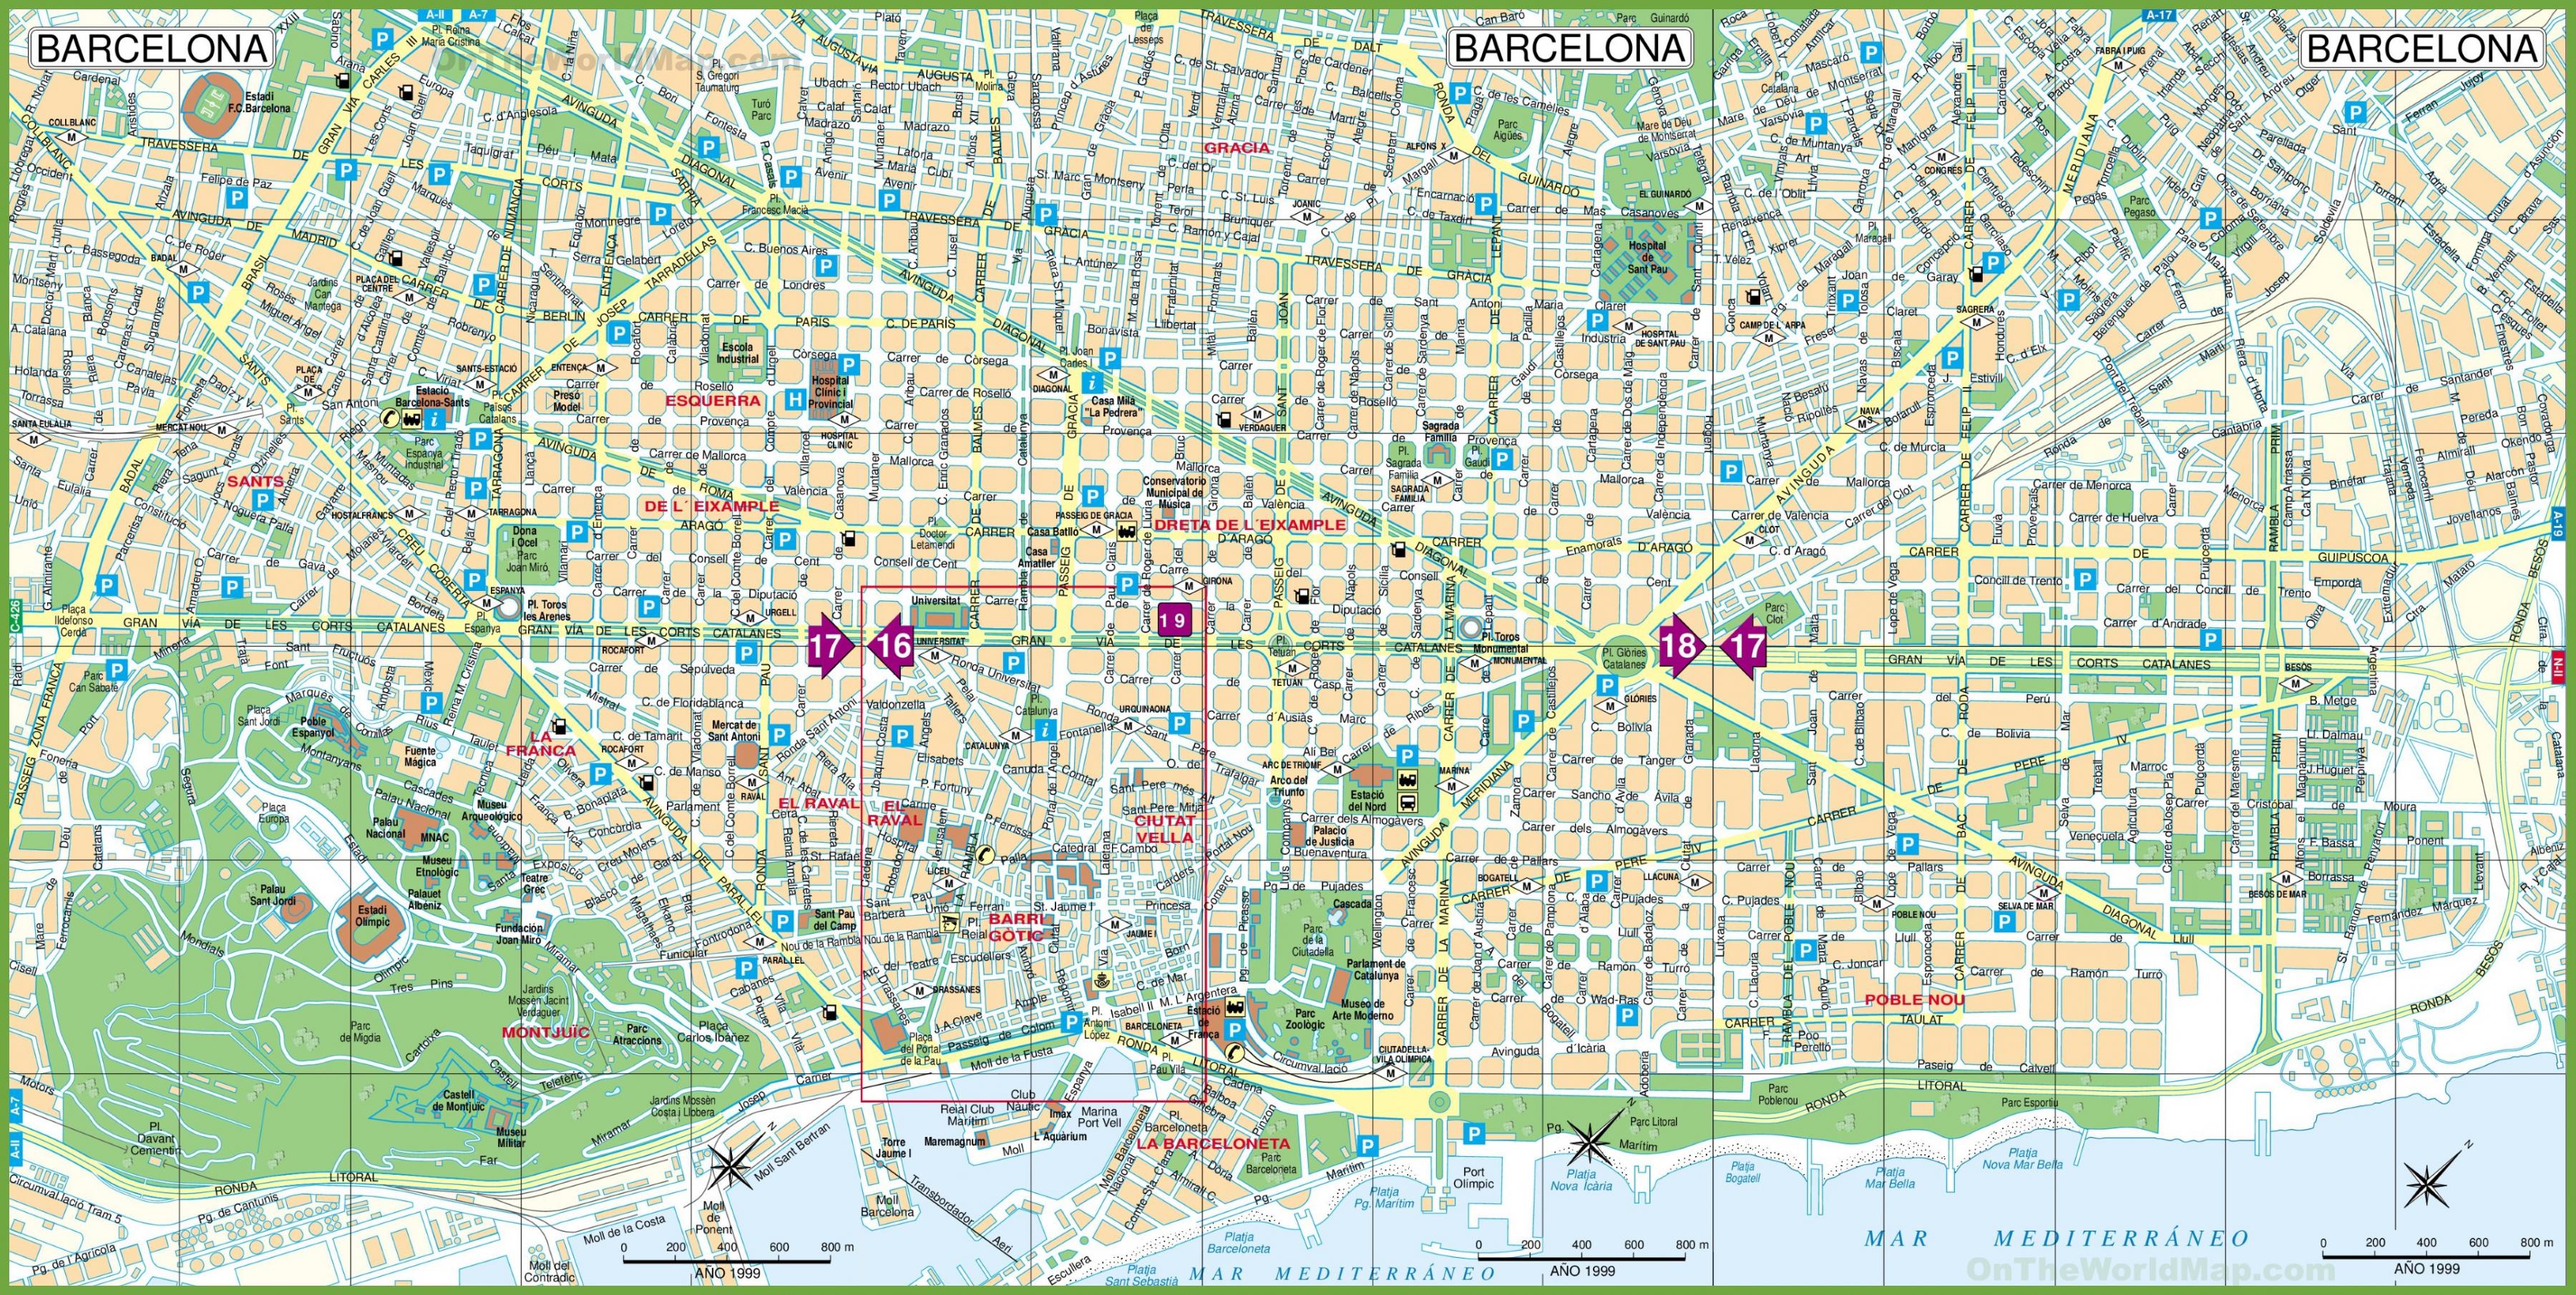 Napier Betsy Trotwood Legado Barcelona, mapa de la ciudad - la ciudad de Barcelona mapa turístico  (Cataluña, España)